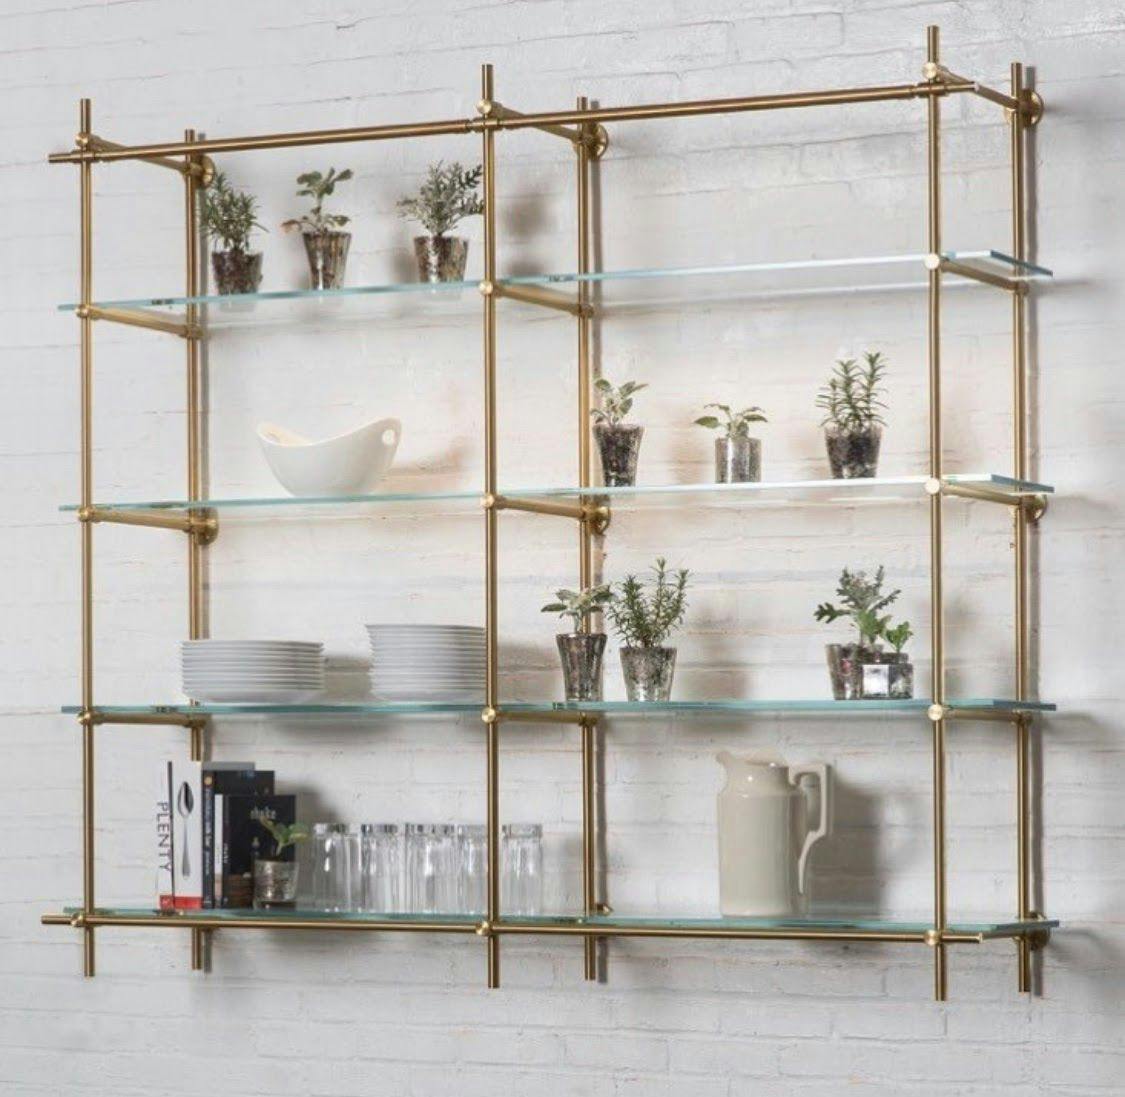 brass-railing-glass-shelves.jpg